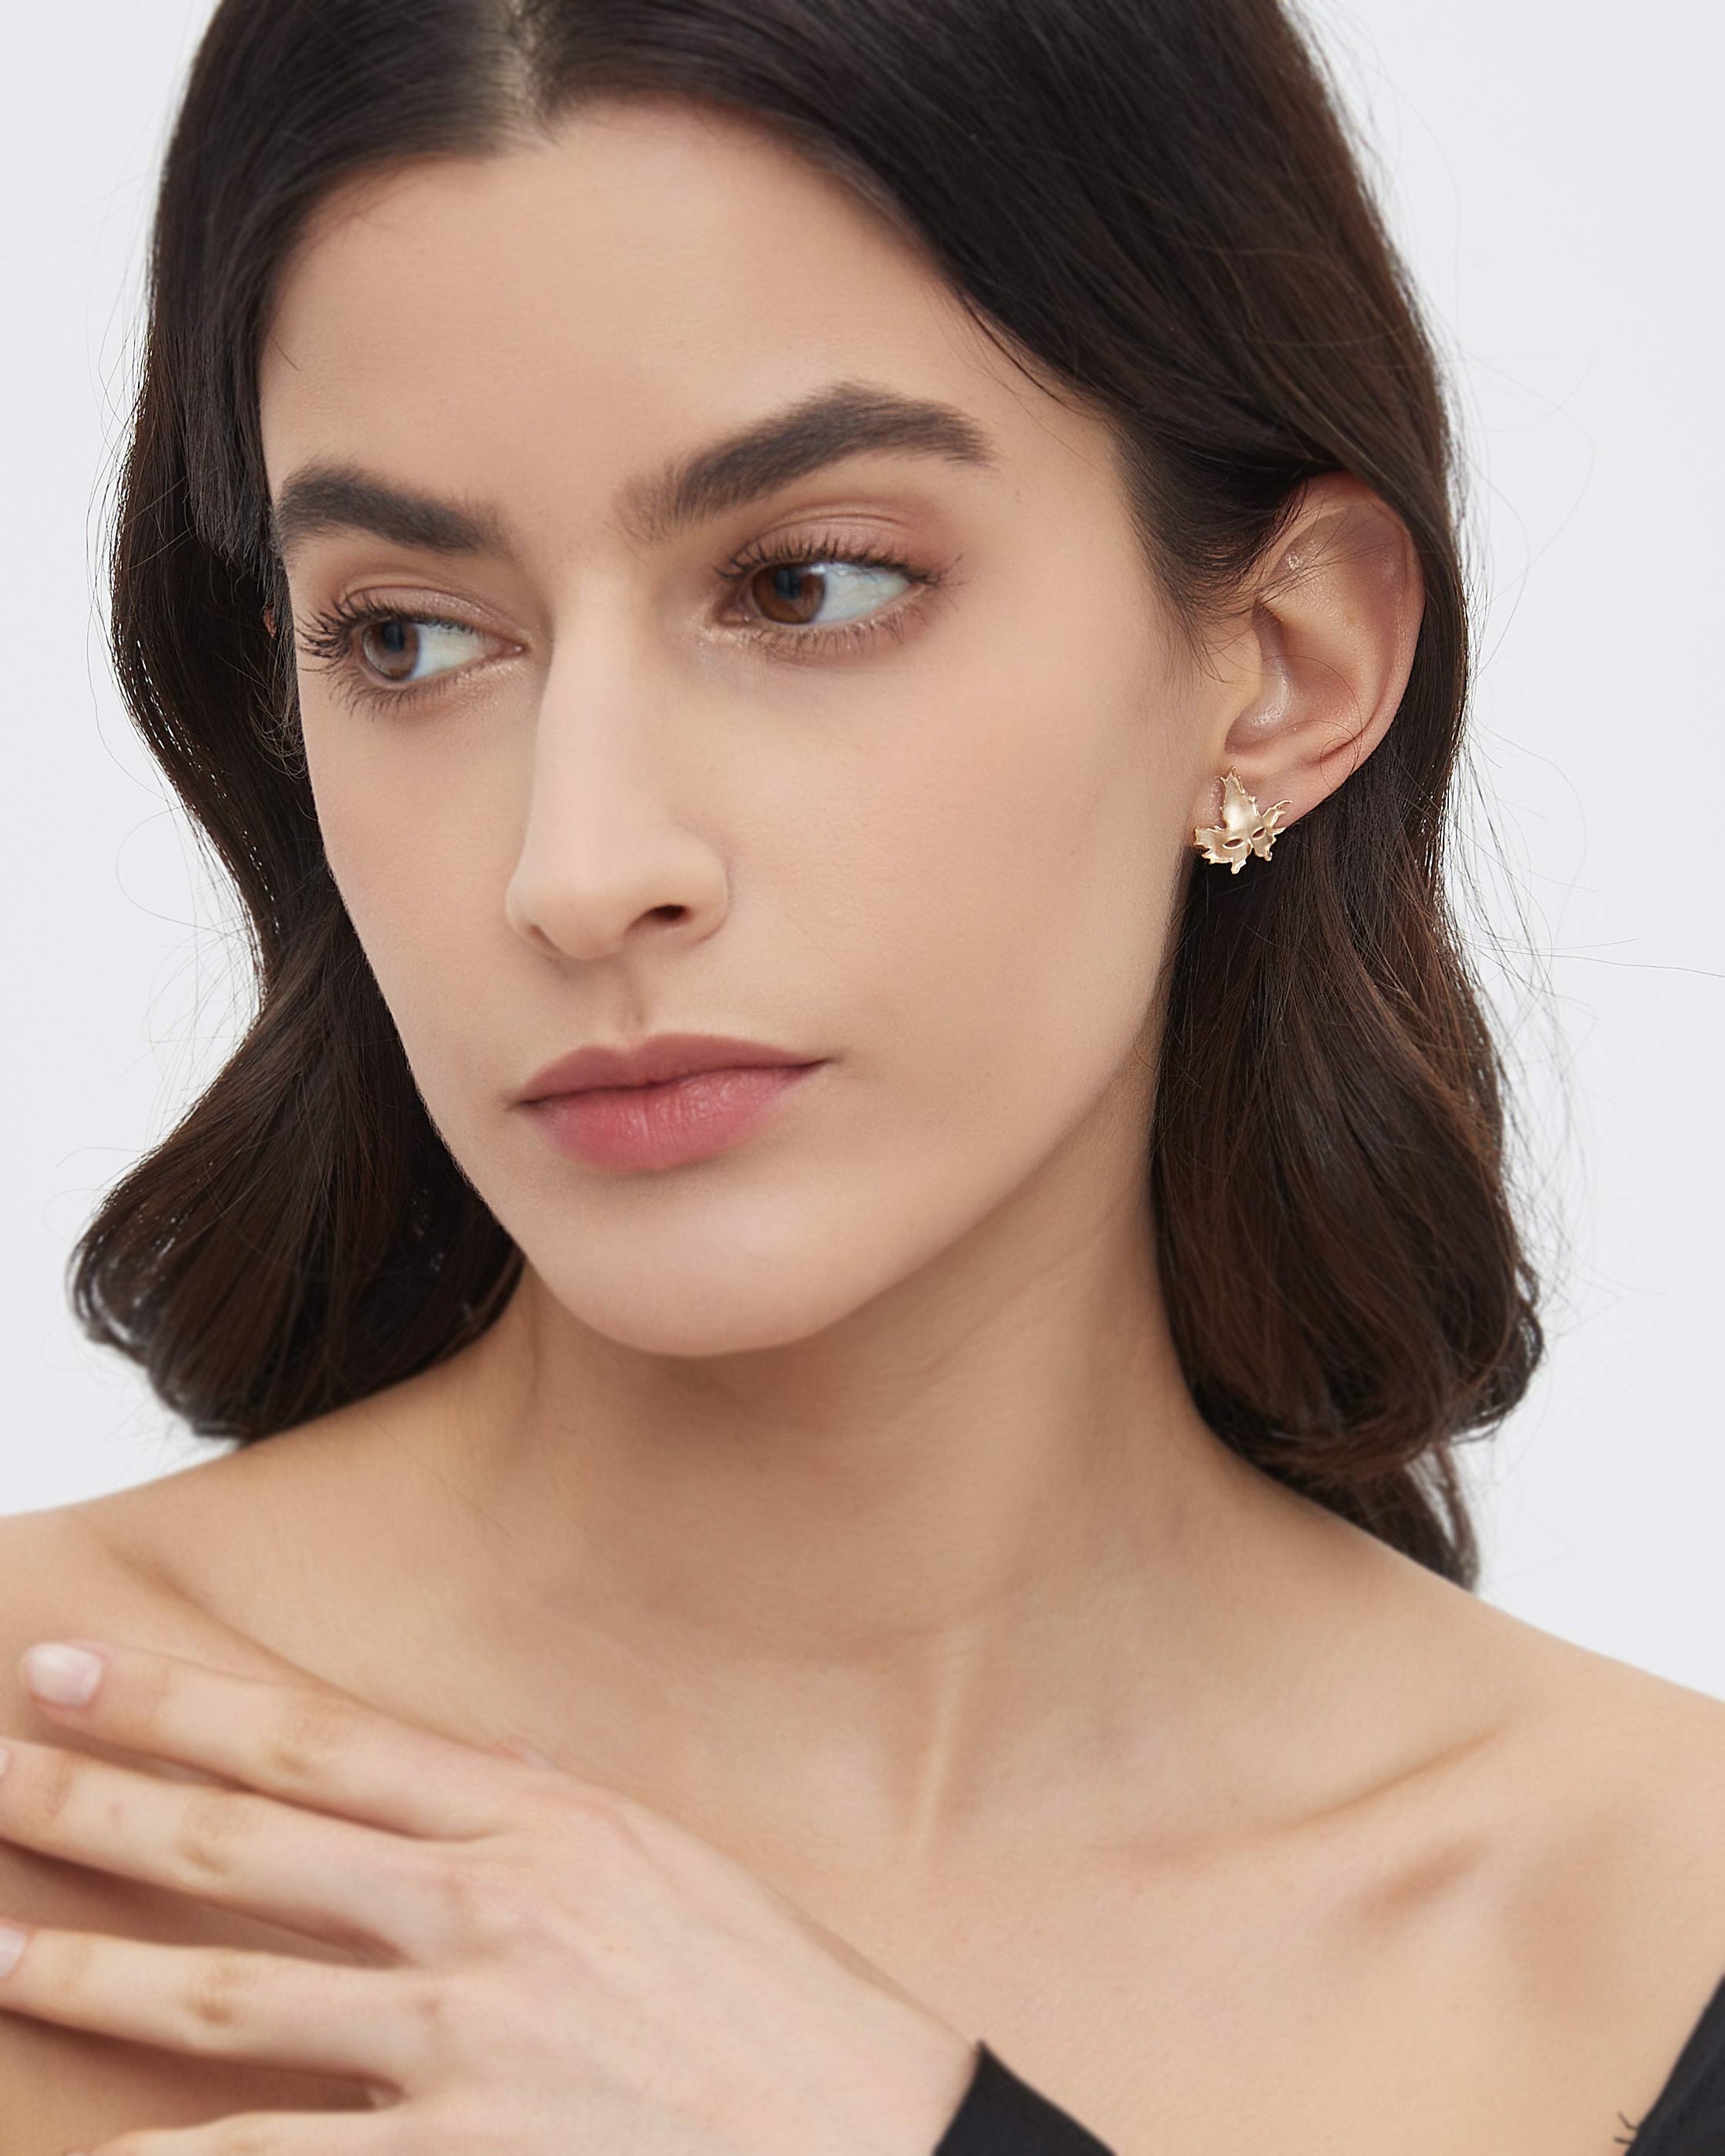 Maple Leaf Mask Stud earrings in 10k Gold